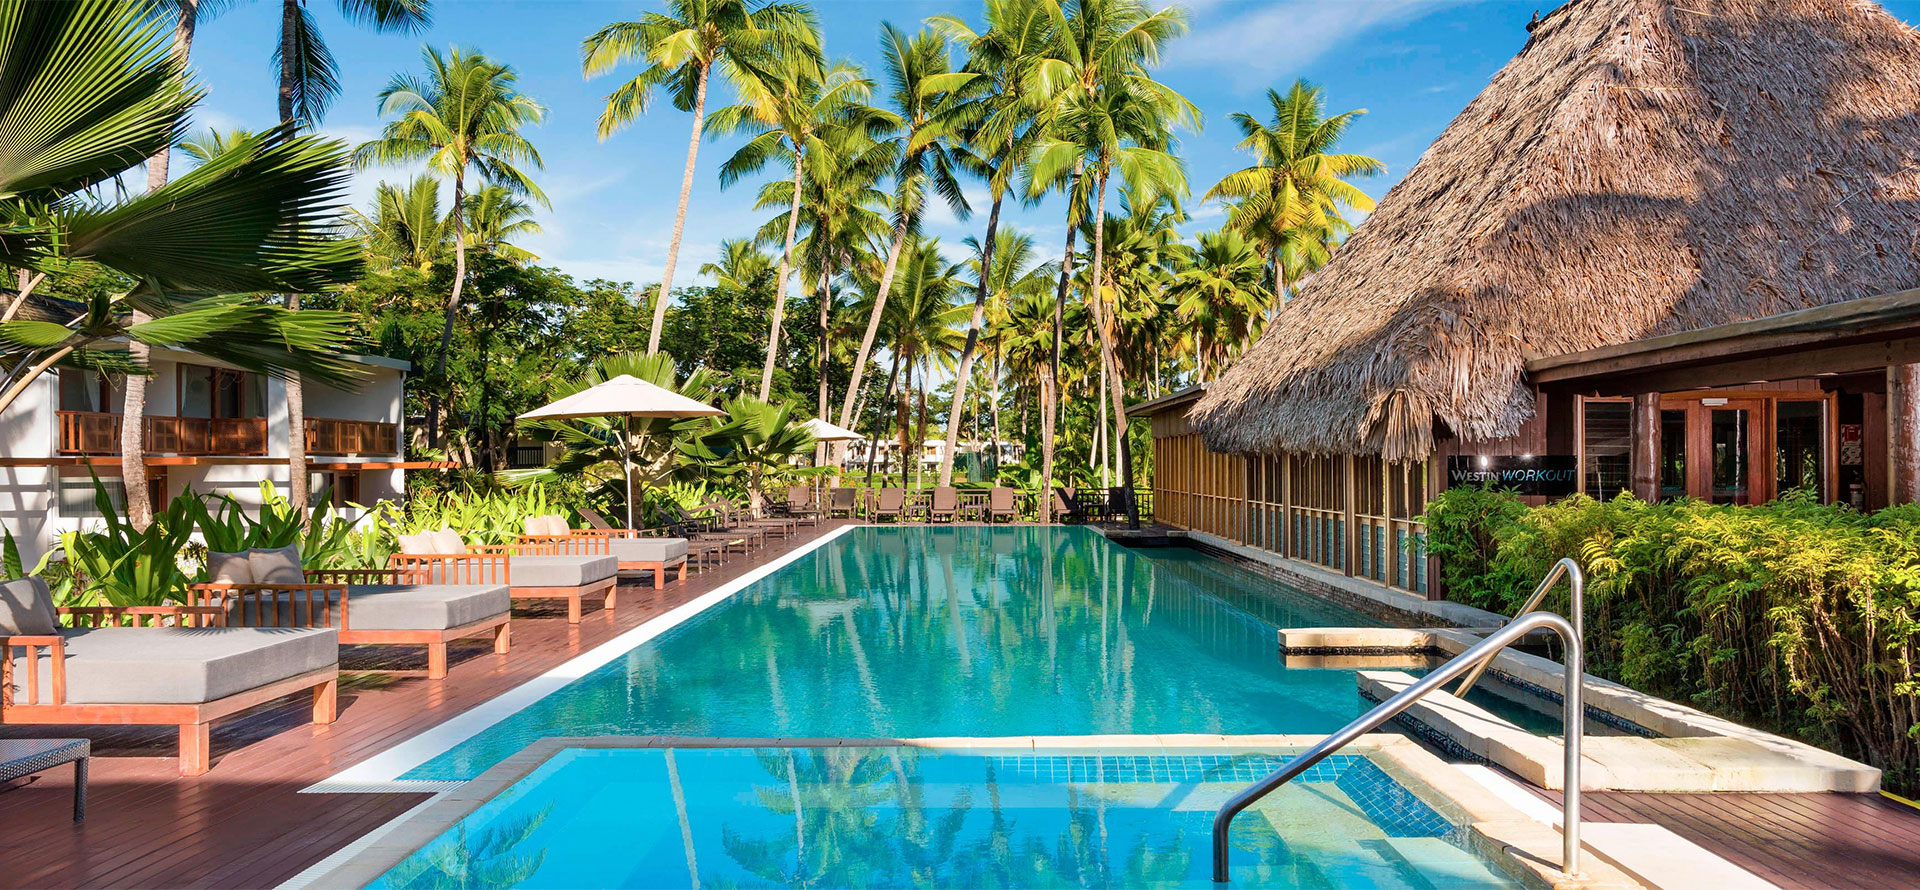 Swimming pool in Fiji all-inclusive resorts.